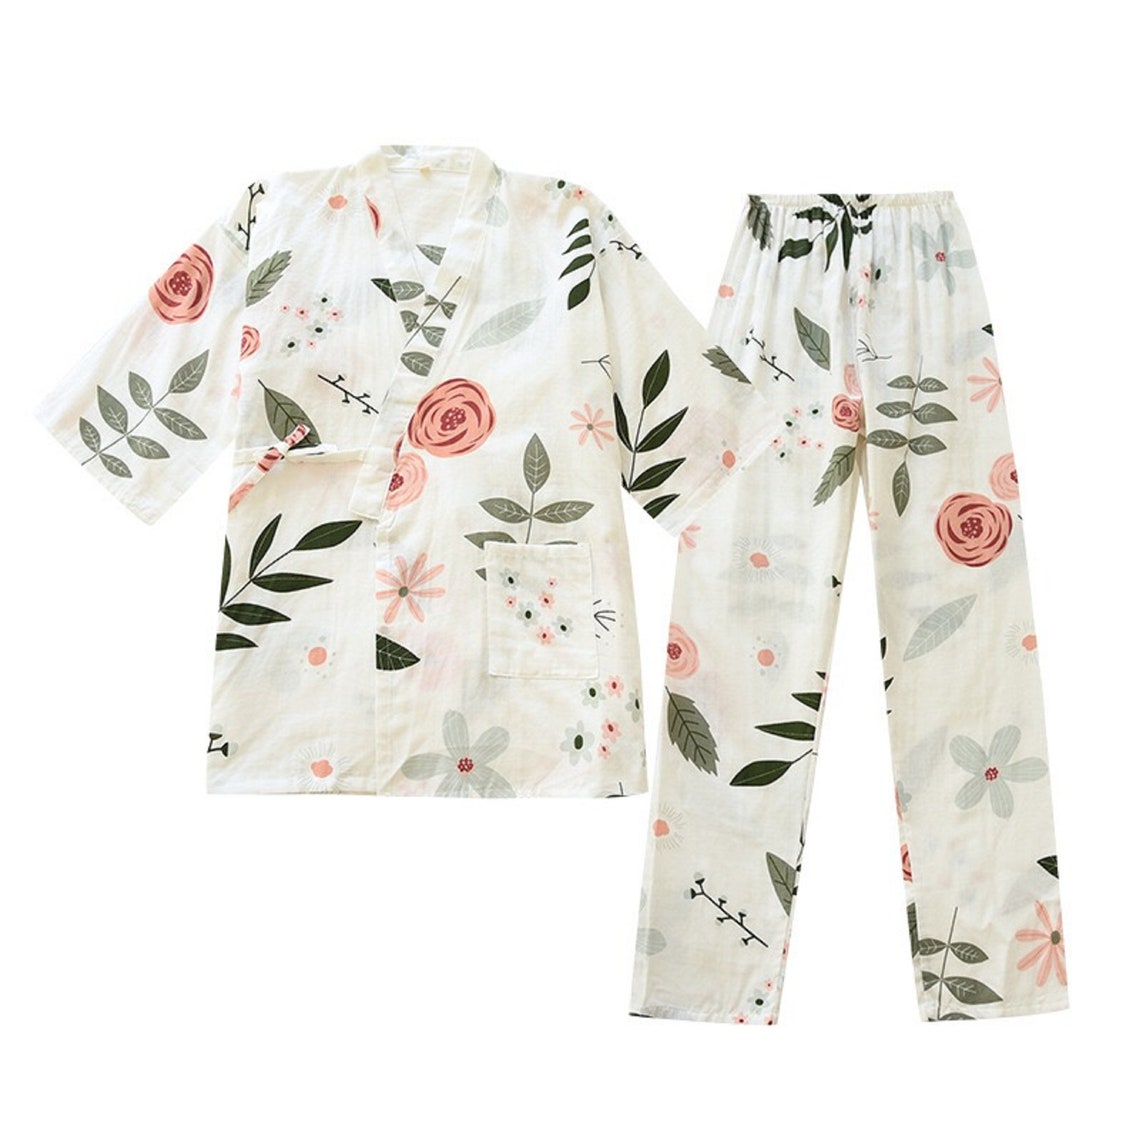 Japanese Kimono Cotton Pajamas Two Piece Set, Floral Printed Half ...